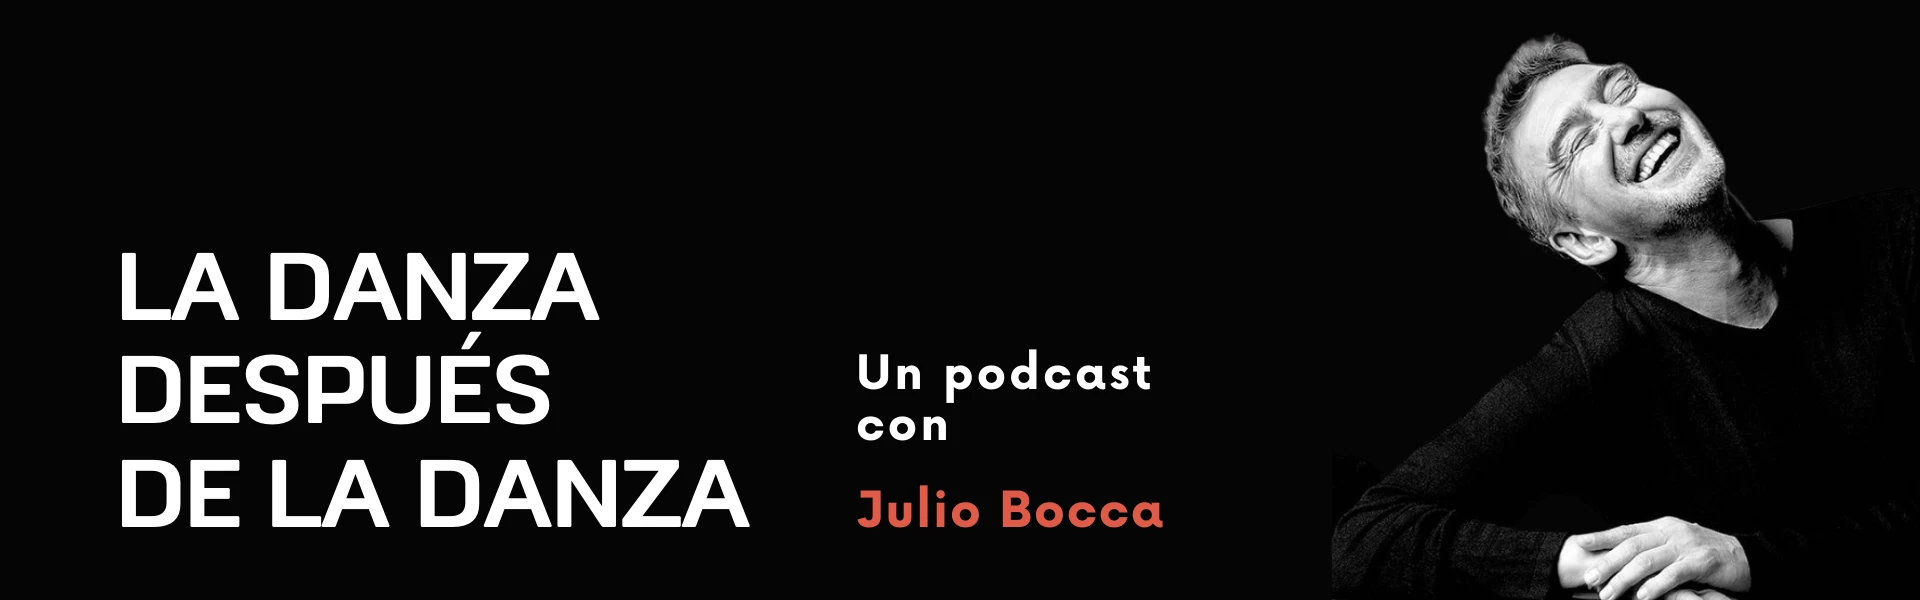 La danza después de la danza un podcast de Julio Bocca